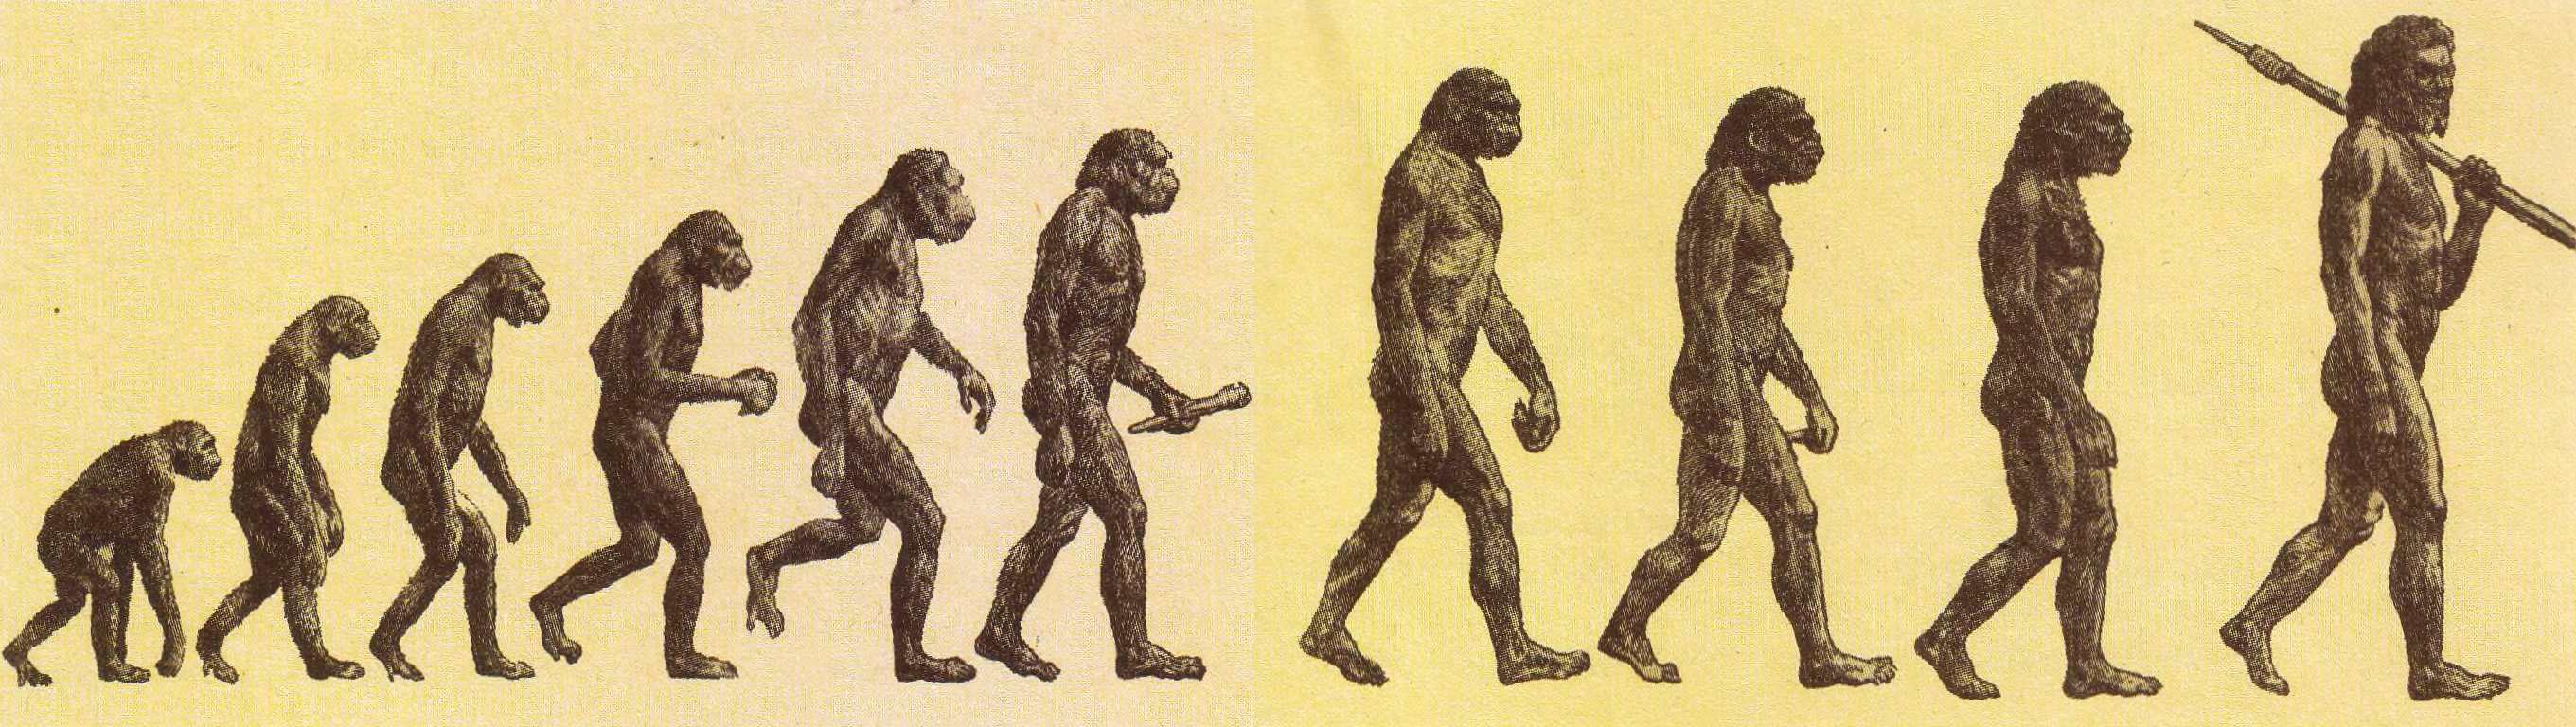 Некоторые эволюционные изменения. Теория эволюции Дарвина. Дарвин теория эволюции и происхождения человека. Теория Дарвина о происхождении человека.